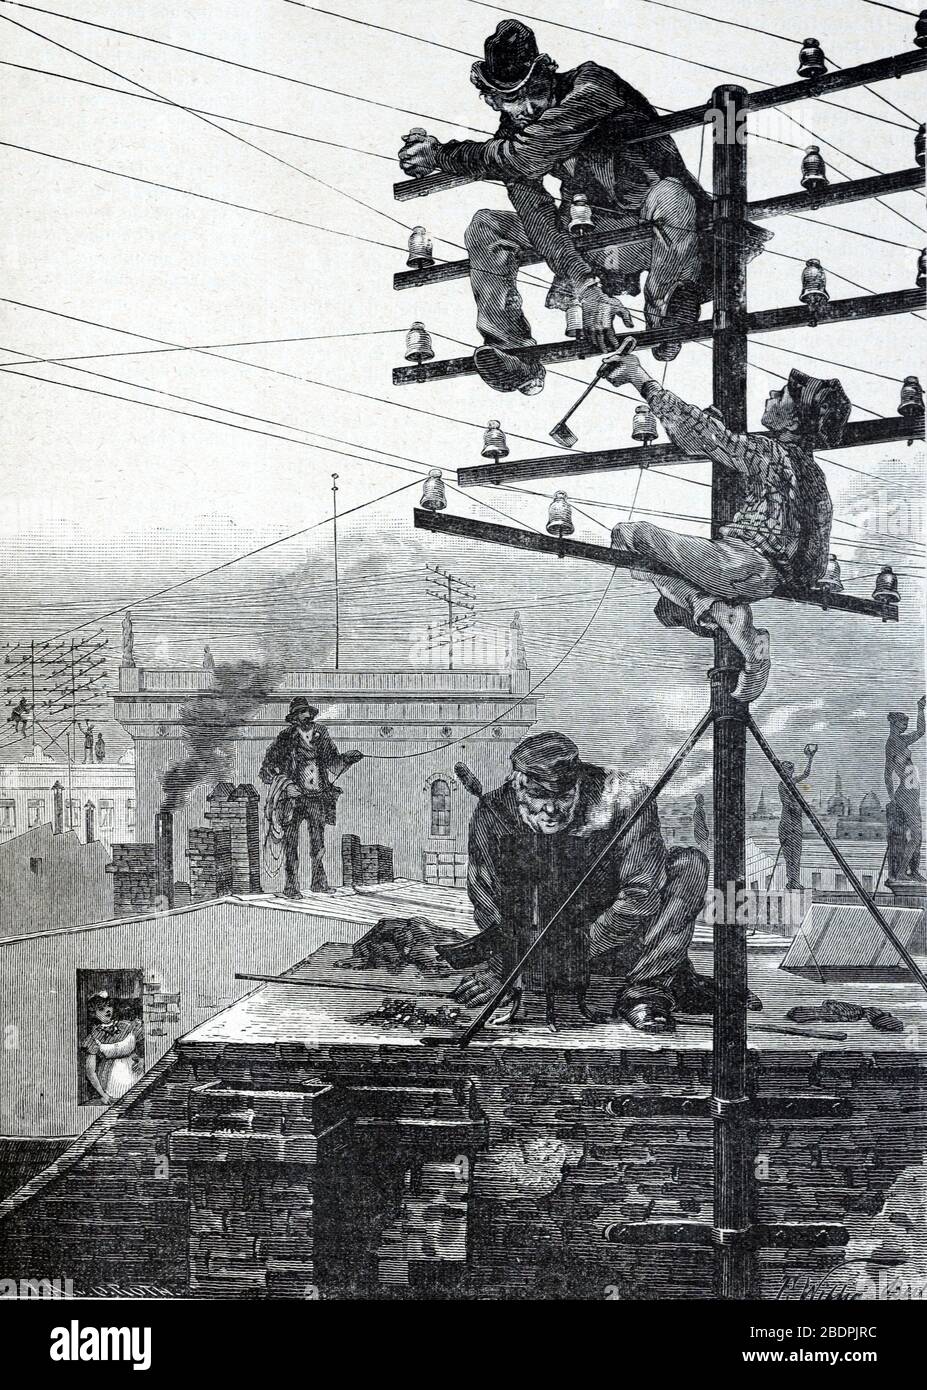 Elektriker oder Telefoningenieure Installation früher Telefonmasten oder Strommasten & Drähte in Berlin Deutschland. Vintage oder Alte Illustration oder Gravur 1866 Stockfoto